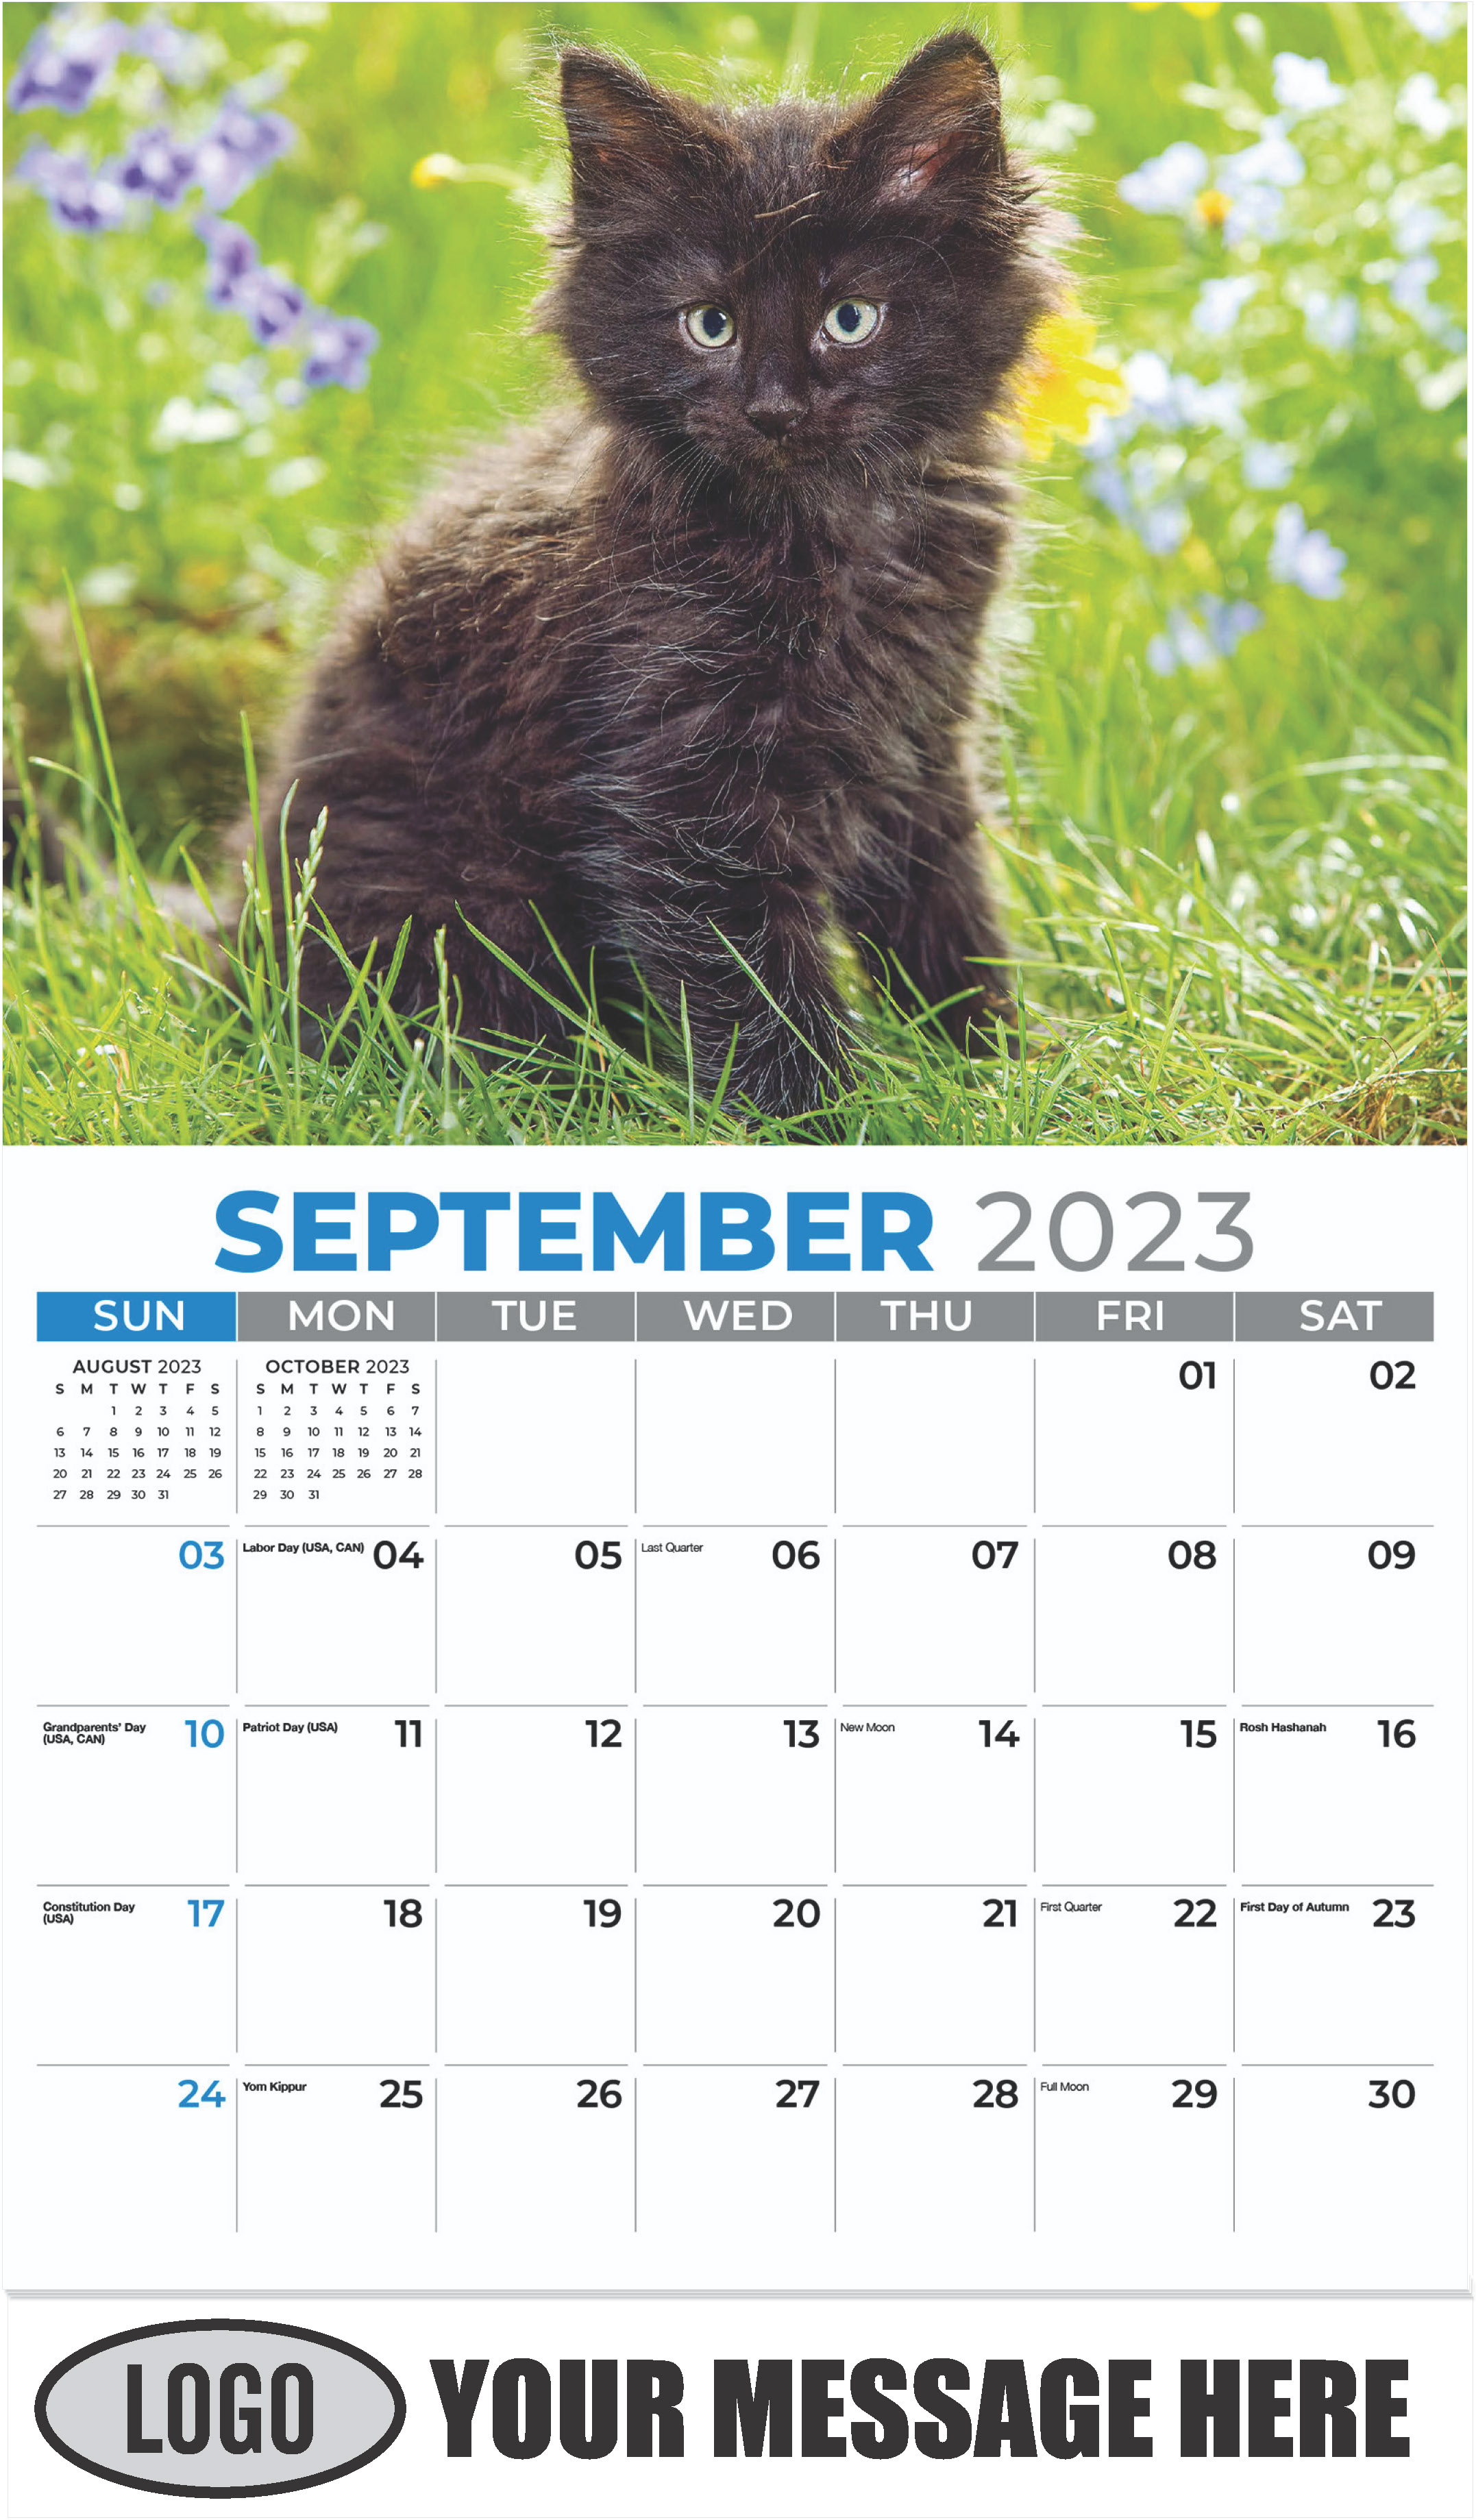 Norwegian Forest Kitten - September - Kittens 2023 Promotional Calendar